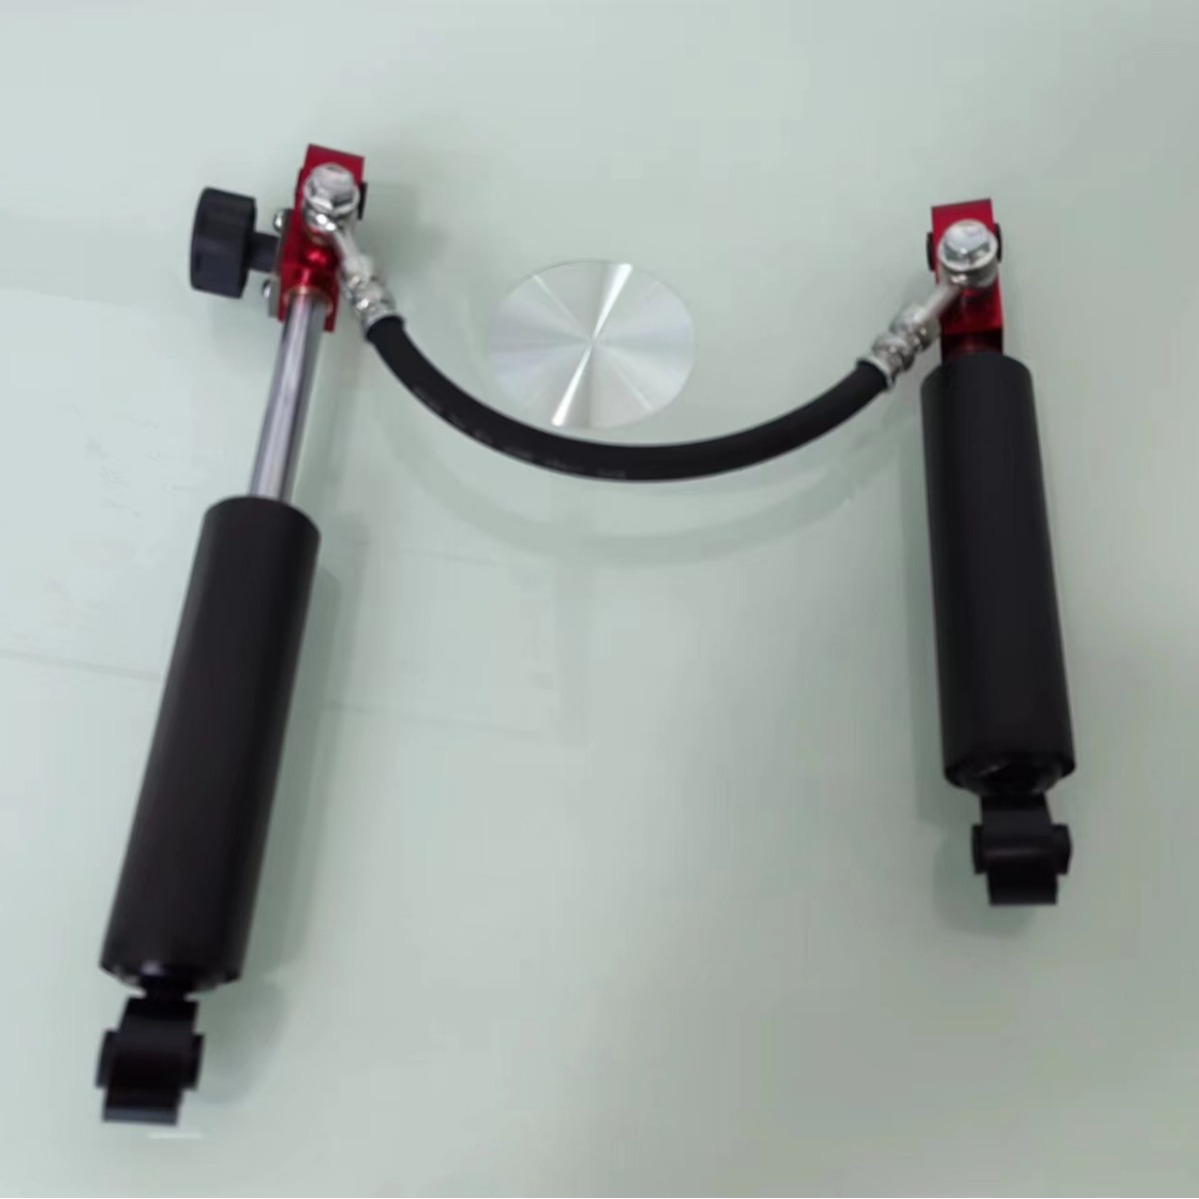 静音踏步机可调连体油缸阻力器液压阻力升级可调阻力器家用健身